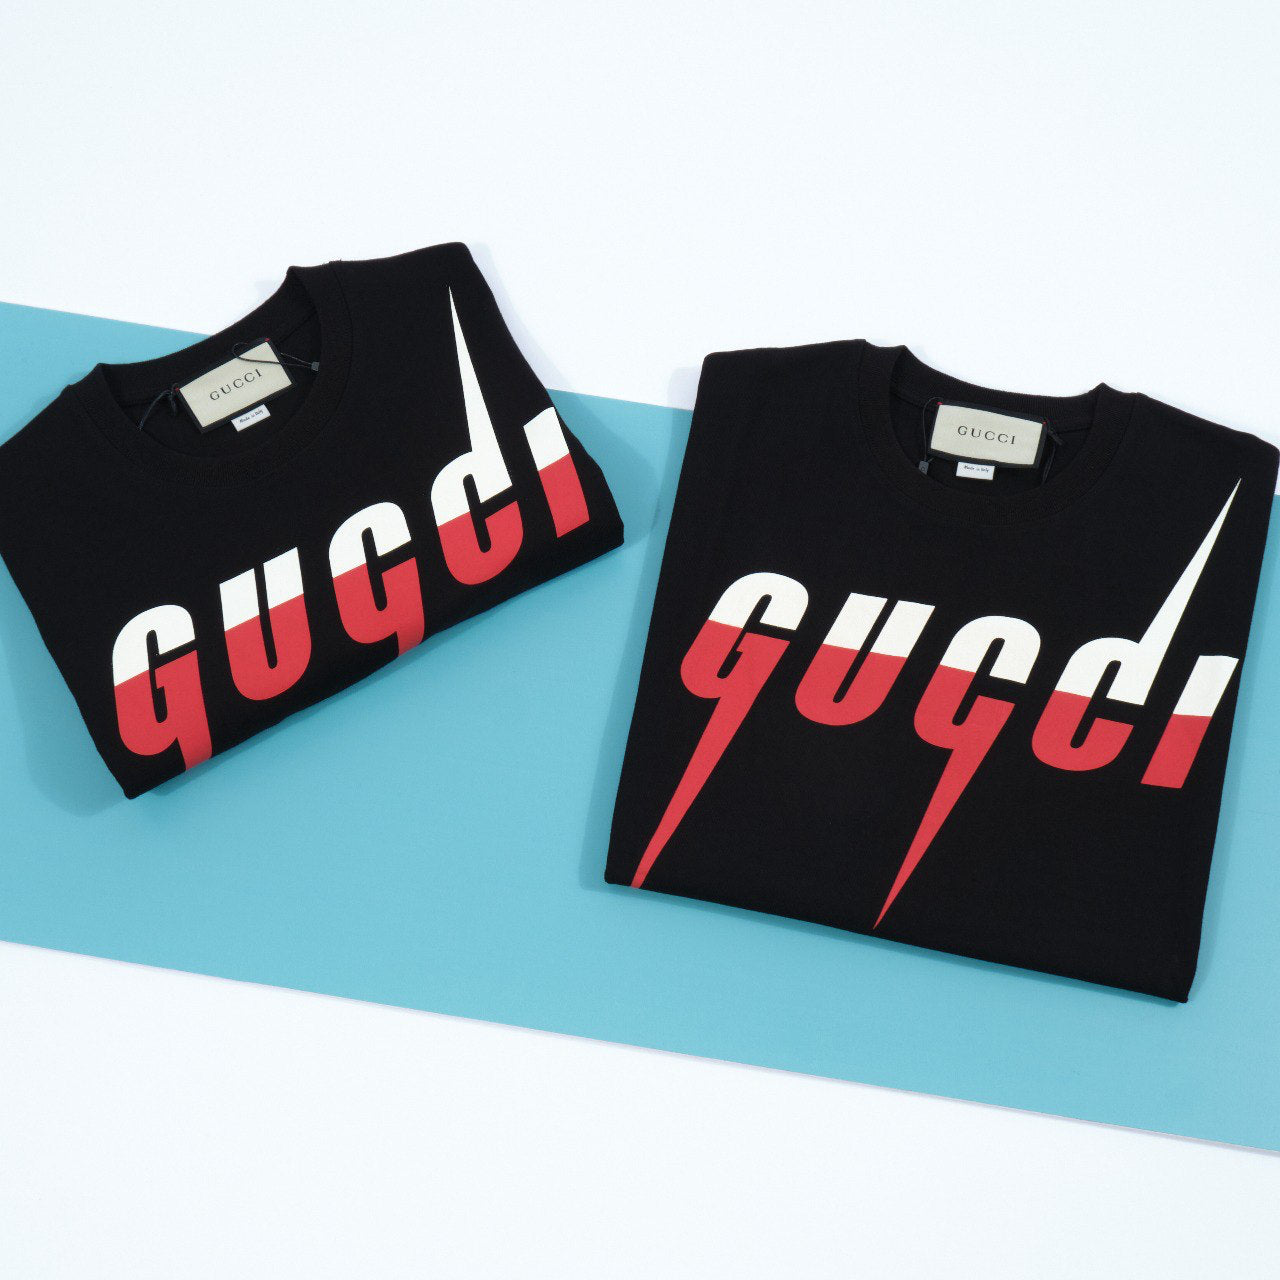 Gucci Blade print T-shirt Black